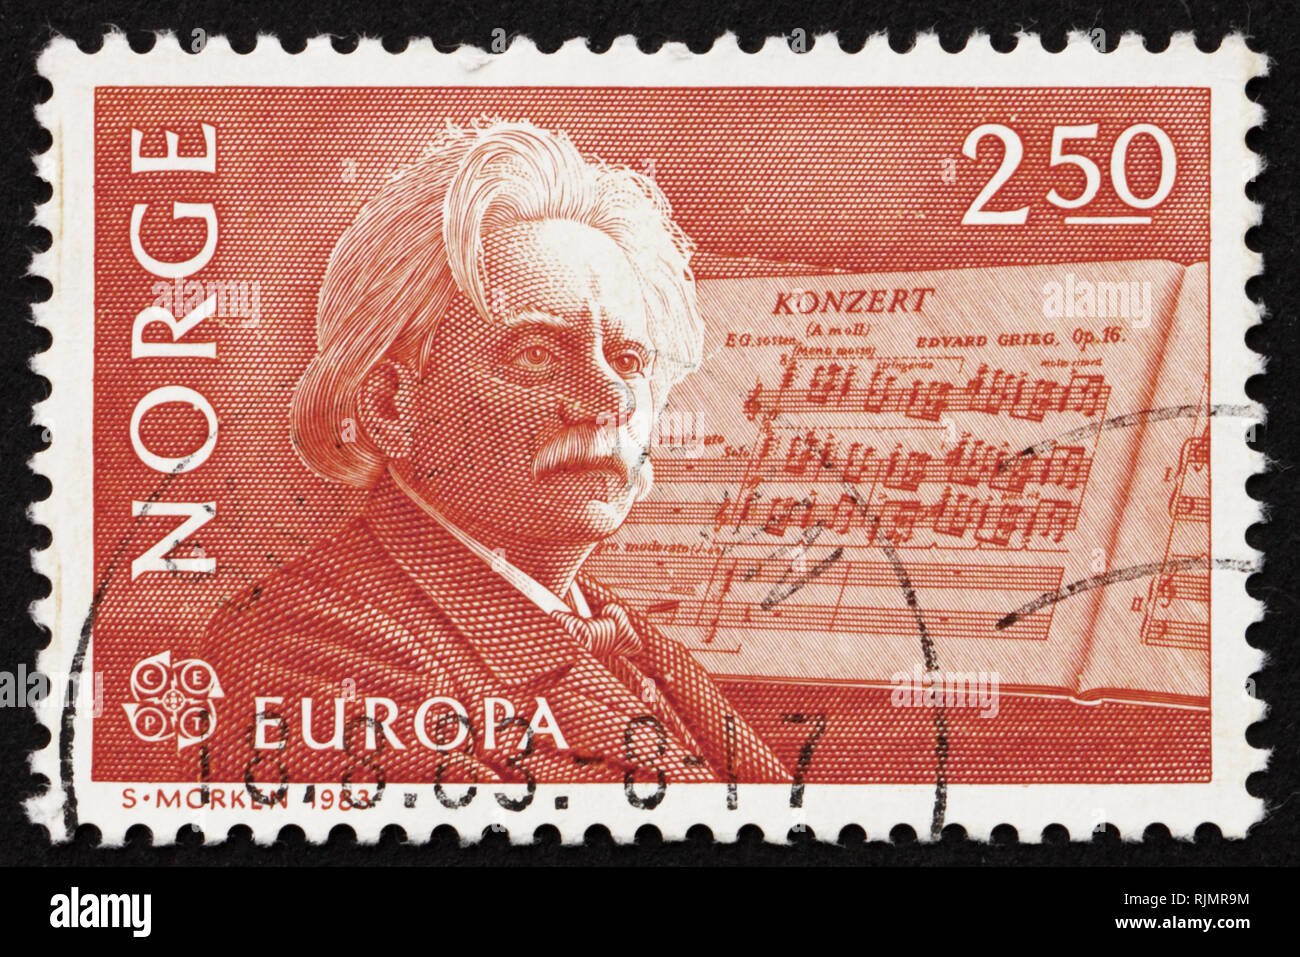 Norvège - circa 1983 : timbre imprimé dans la Norvège montre Edvard Grieg,  compositeur et son Concerto pour piano en un-mineur, vers 1983 Photo Stock  - Alamy